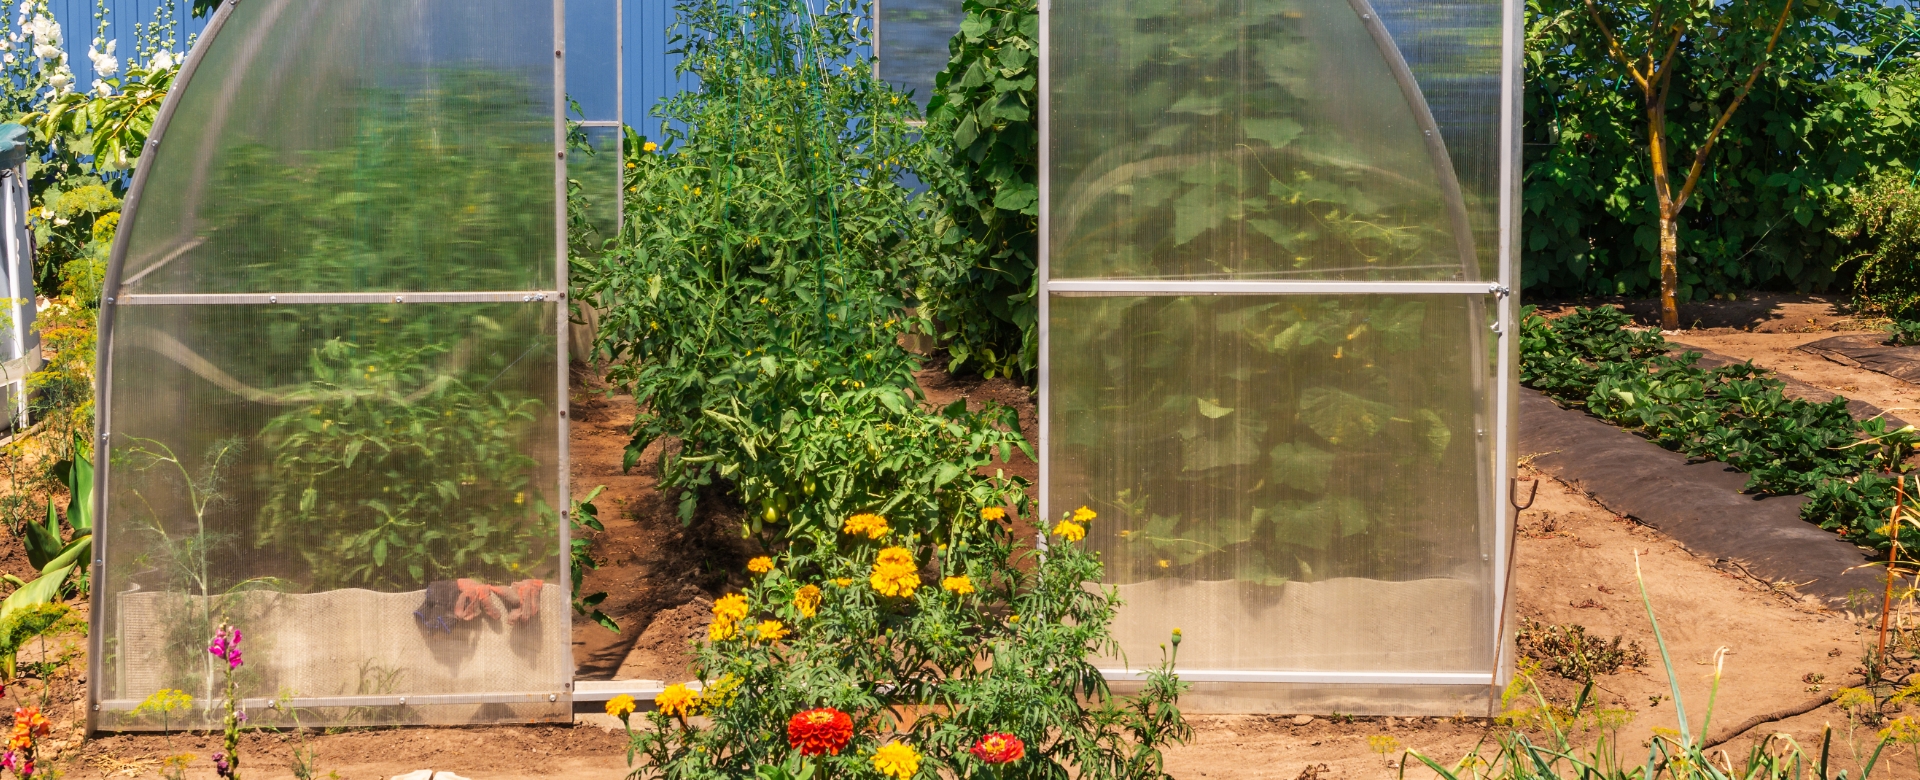 how to start greenhouse gardening